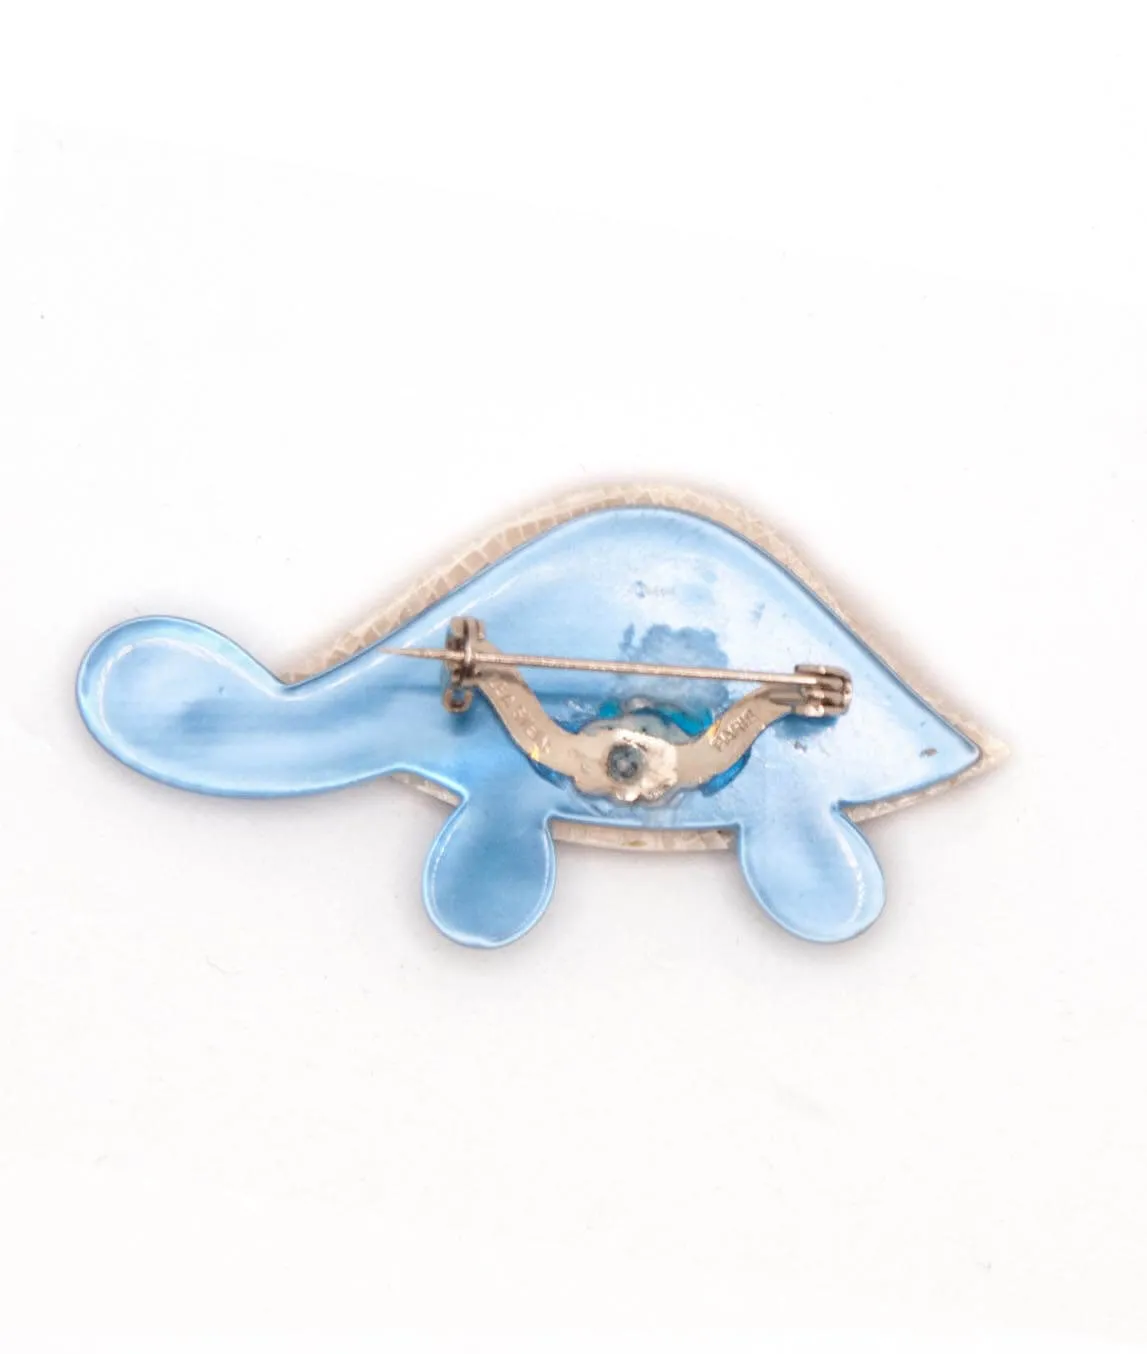 Léa Stein turtle brooch pin reverse blue